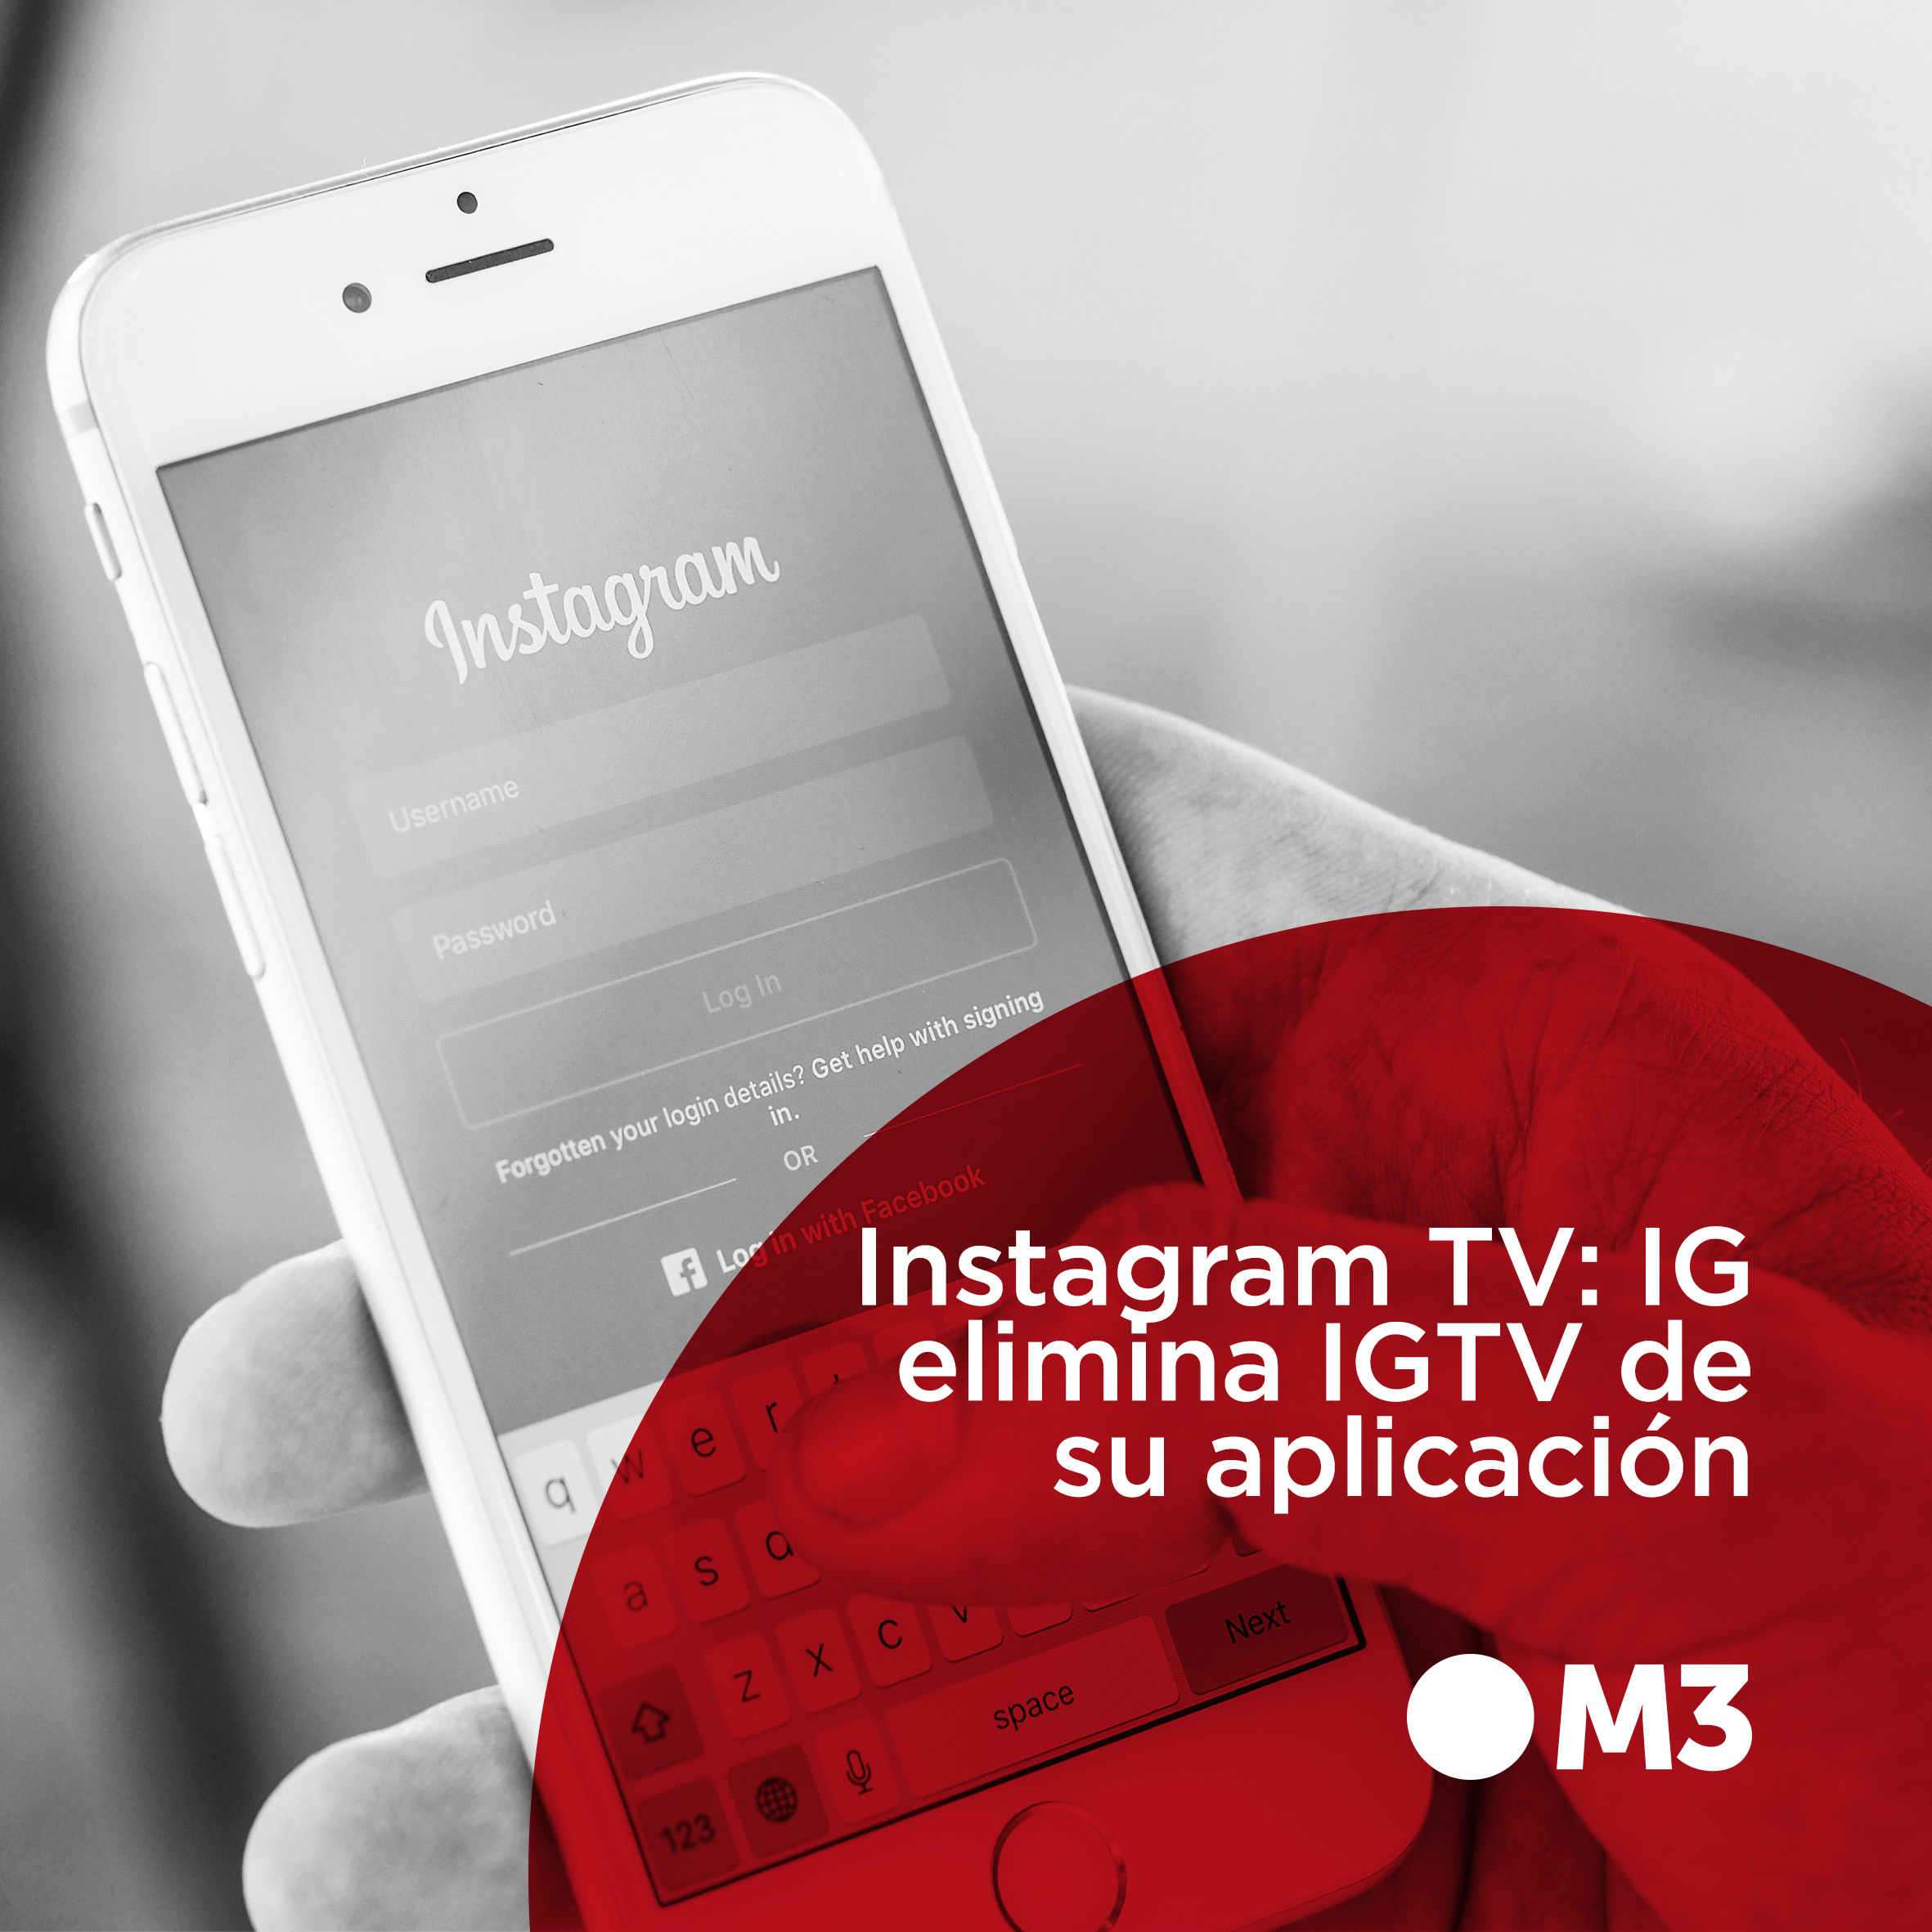 Instagram TV: IG elimina IGTV de su aplicación